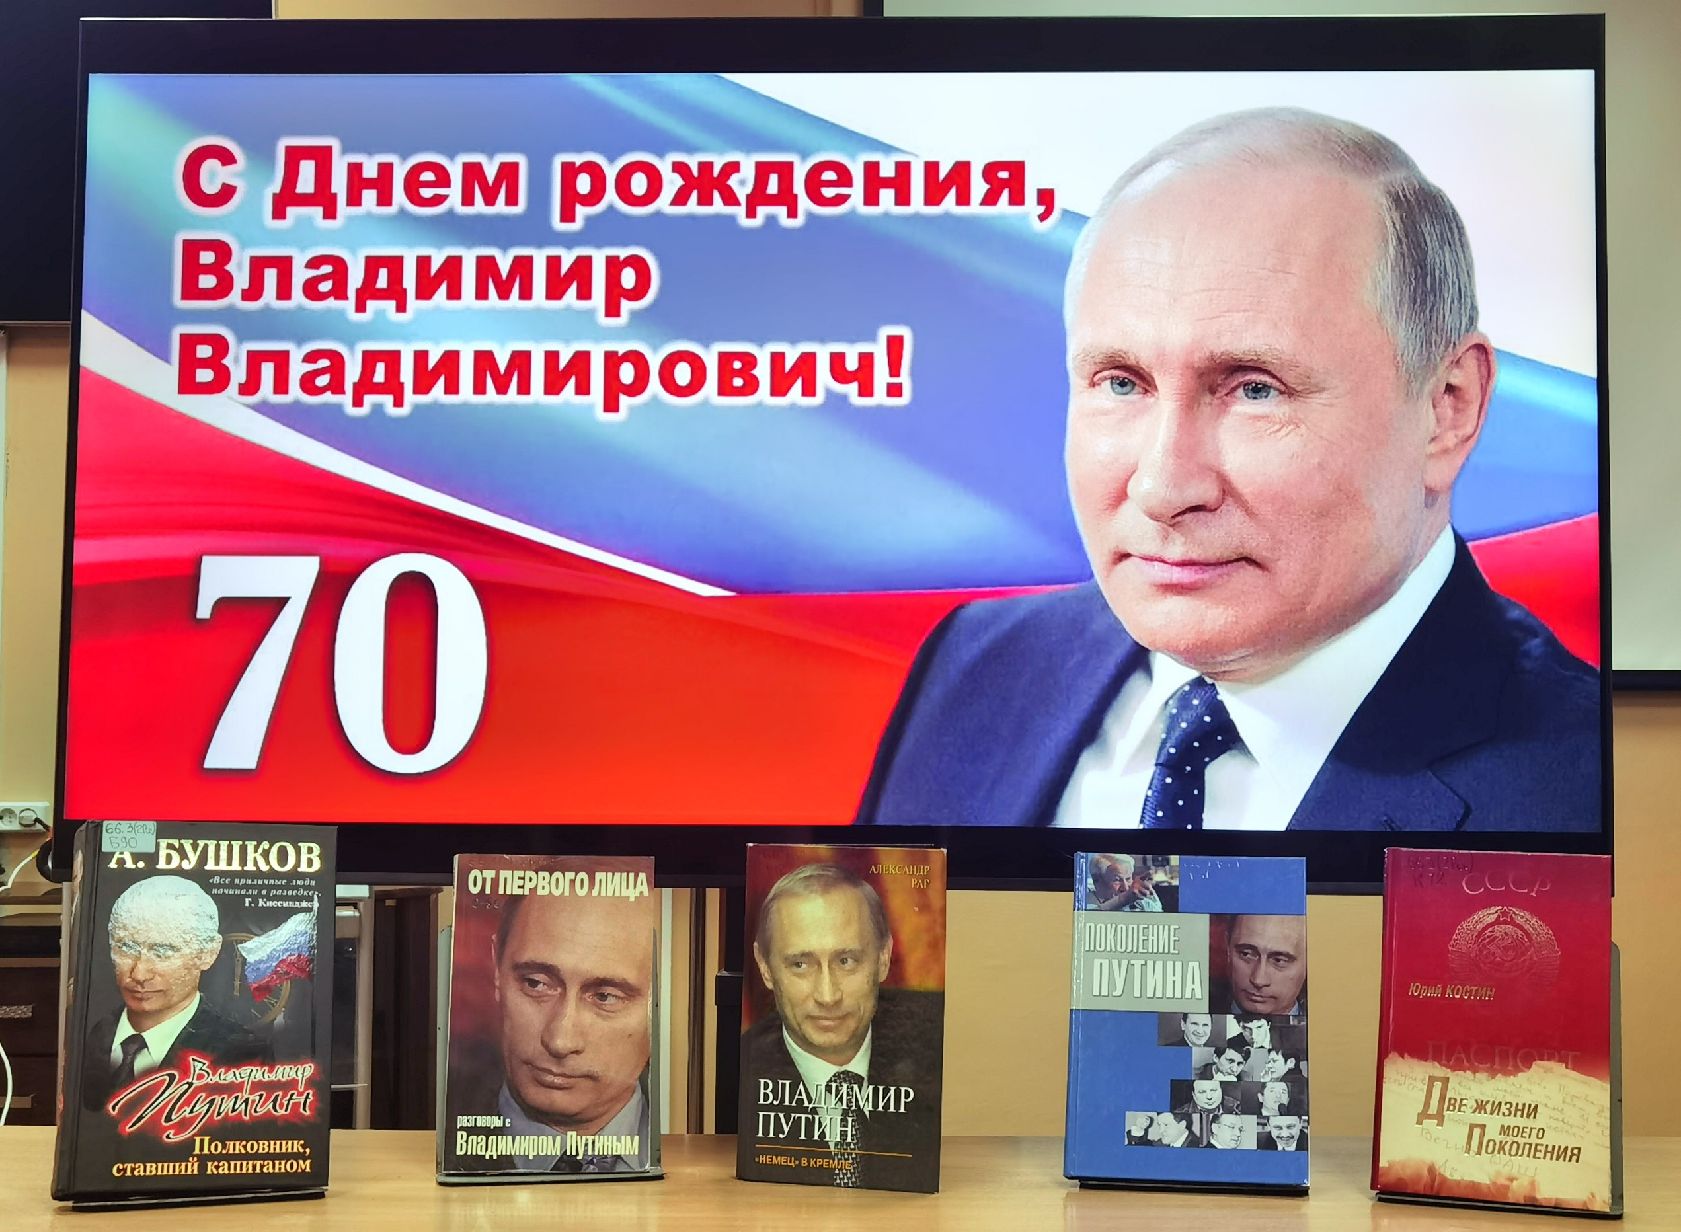 7 Октября день рождения Путина